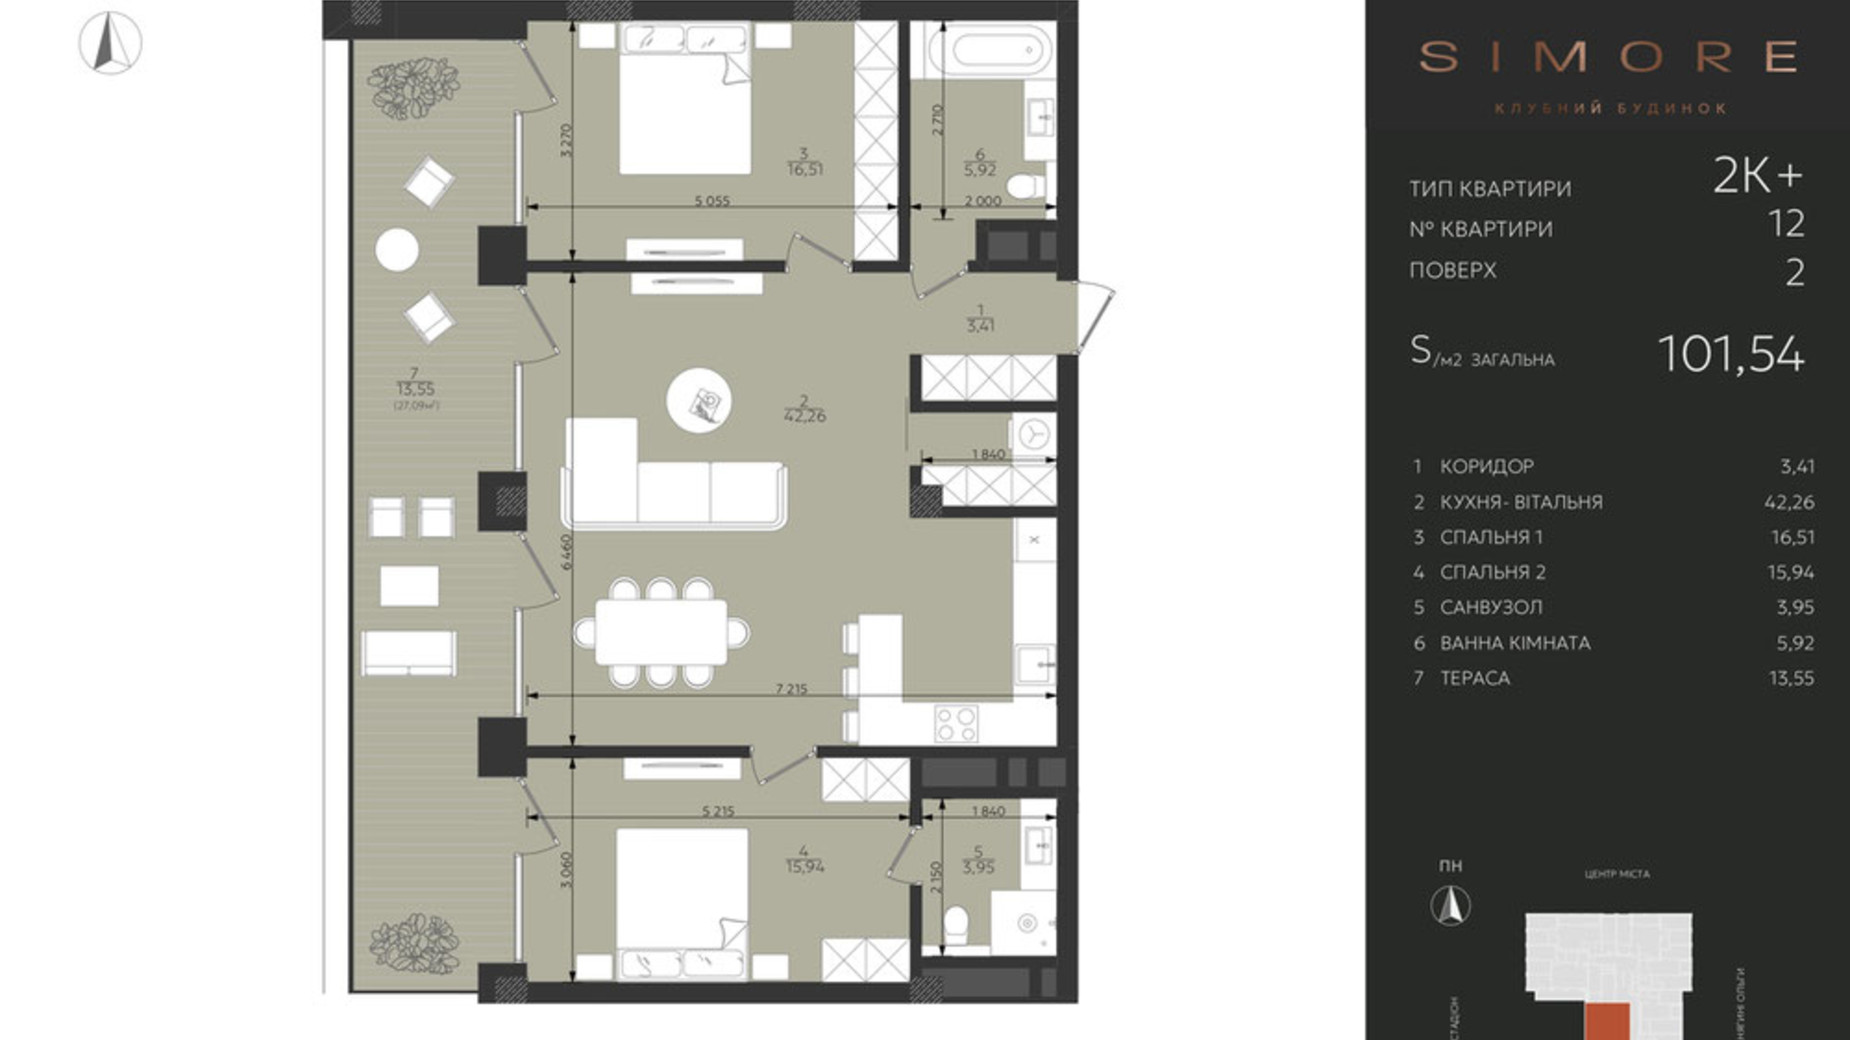 Планировка 2-комнатной квартиры в Клубный дом Simore 101.54 м², фото 694202